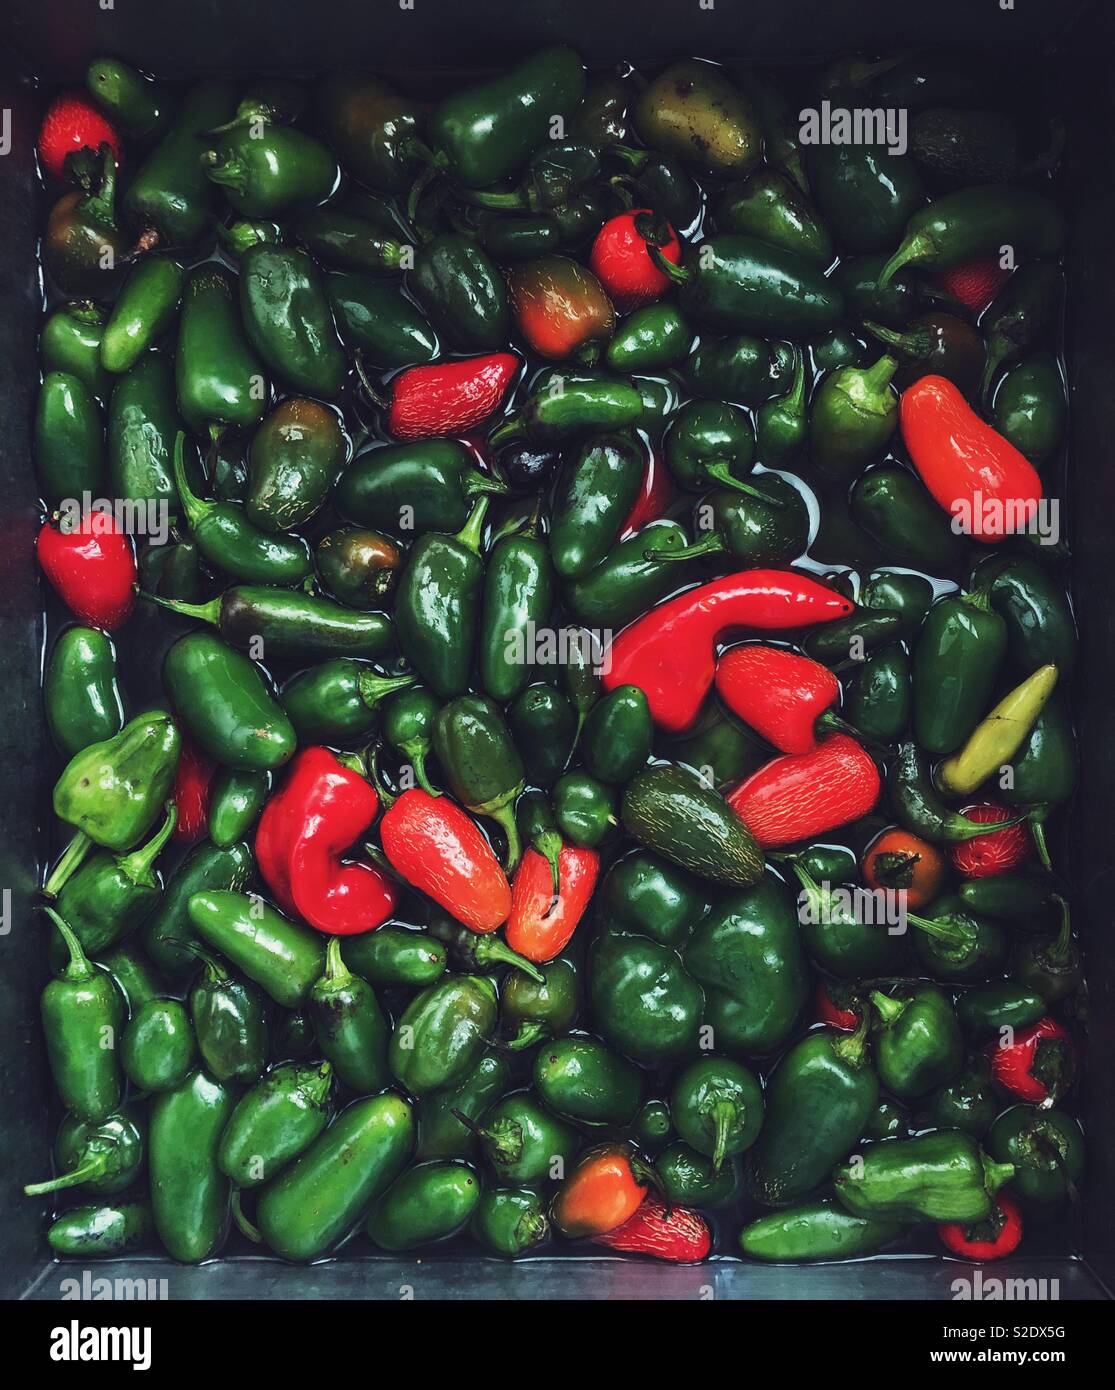 Grande quantità di prodotti freschi raccolti di colore verde e rosso jalapeños getting lavato nel lavello pieno di acqua Foto Stock